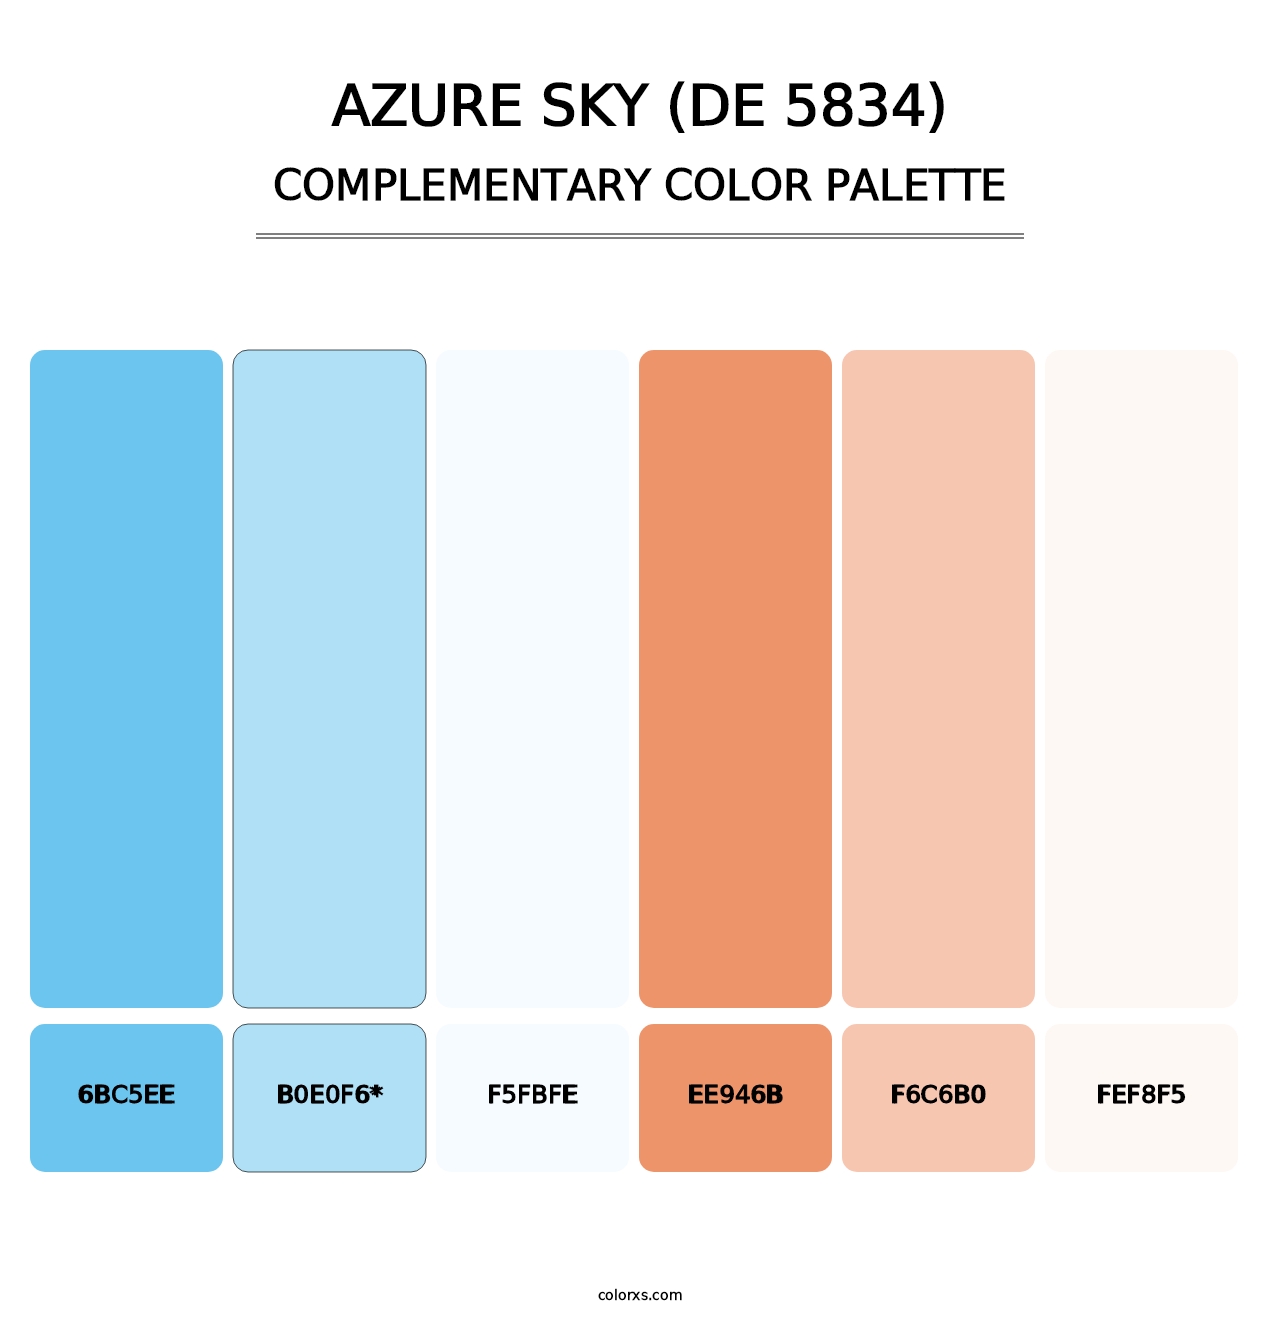 Azure Sky (DE 5834) - Complementary Color Palette